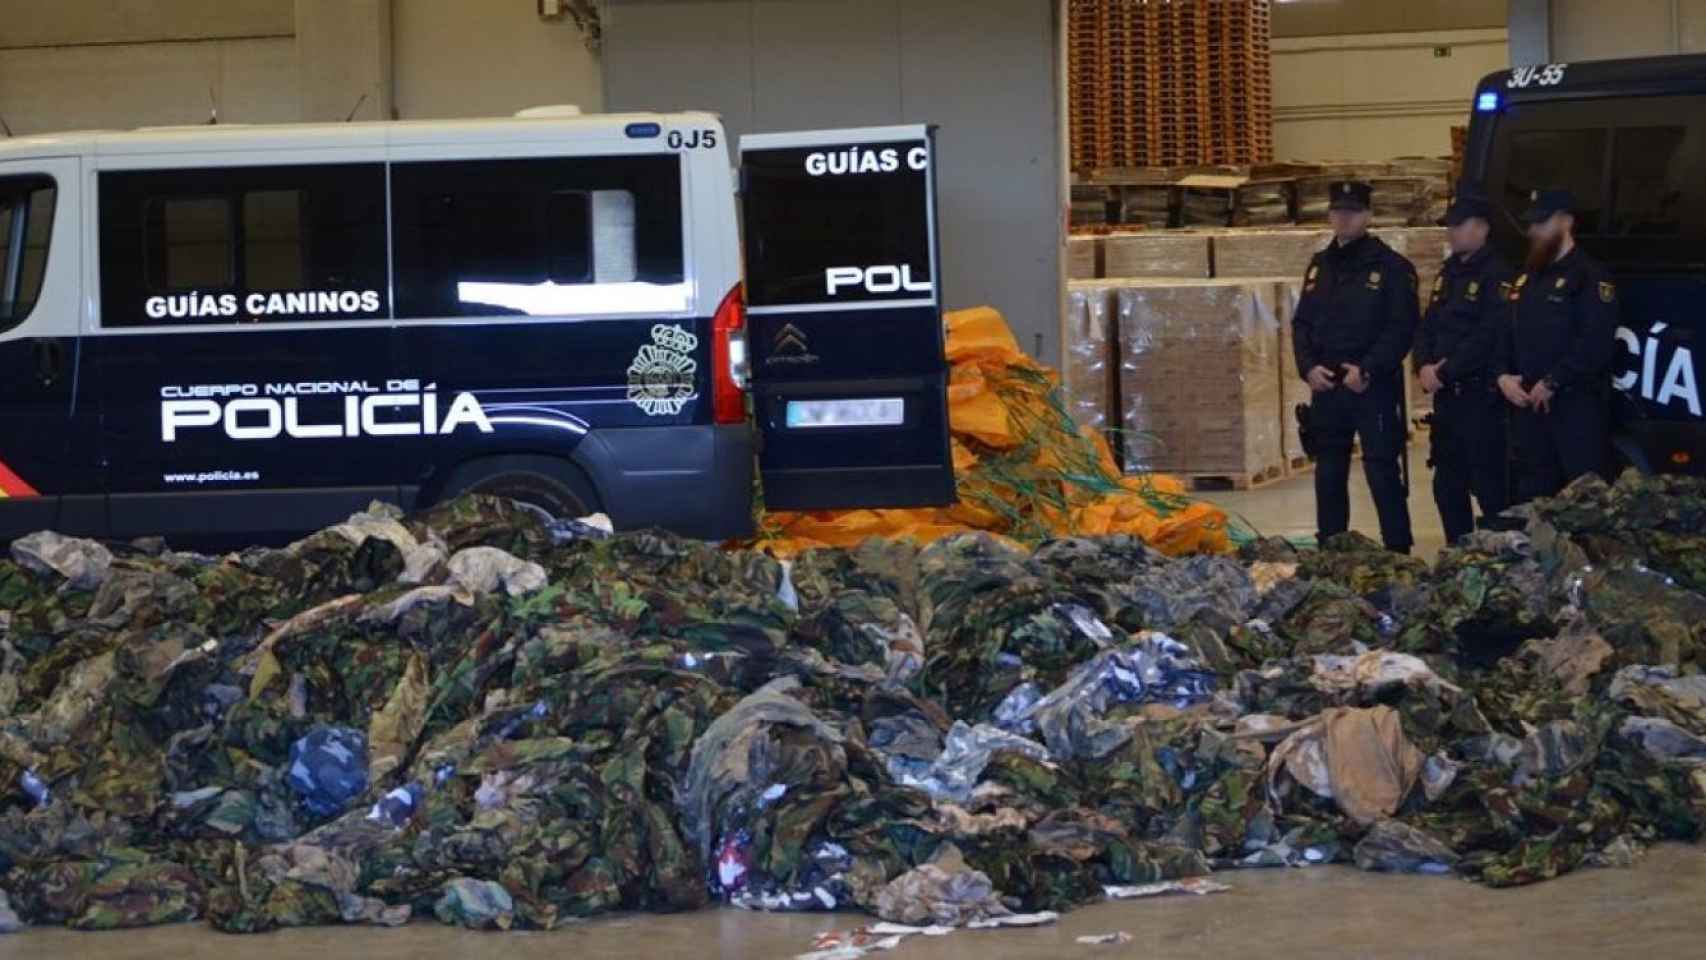 Uniformes interceptados por la Policía Nacional en un contenedor el pasado mes de marzo.